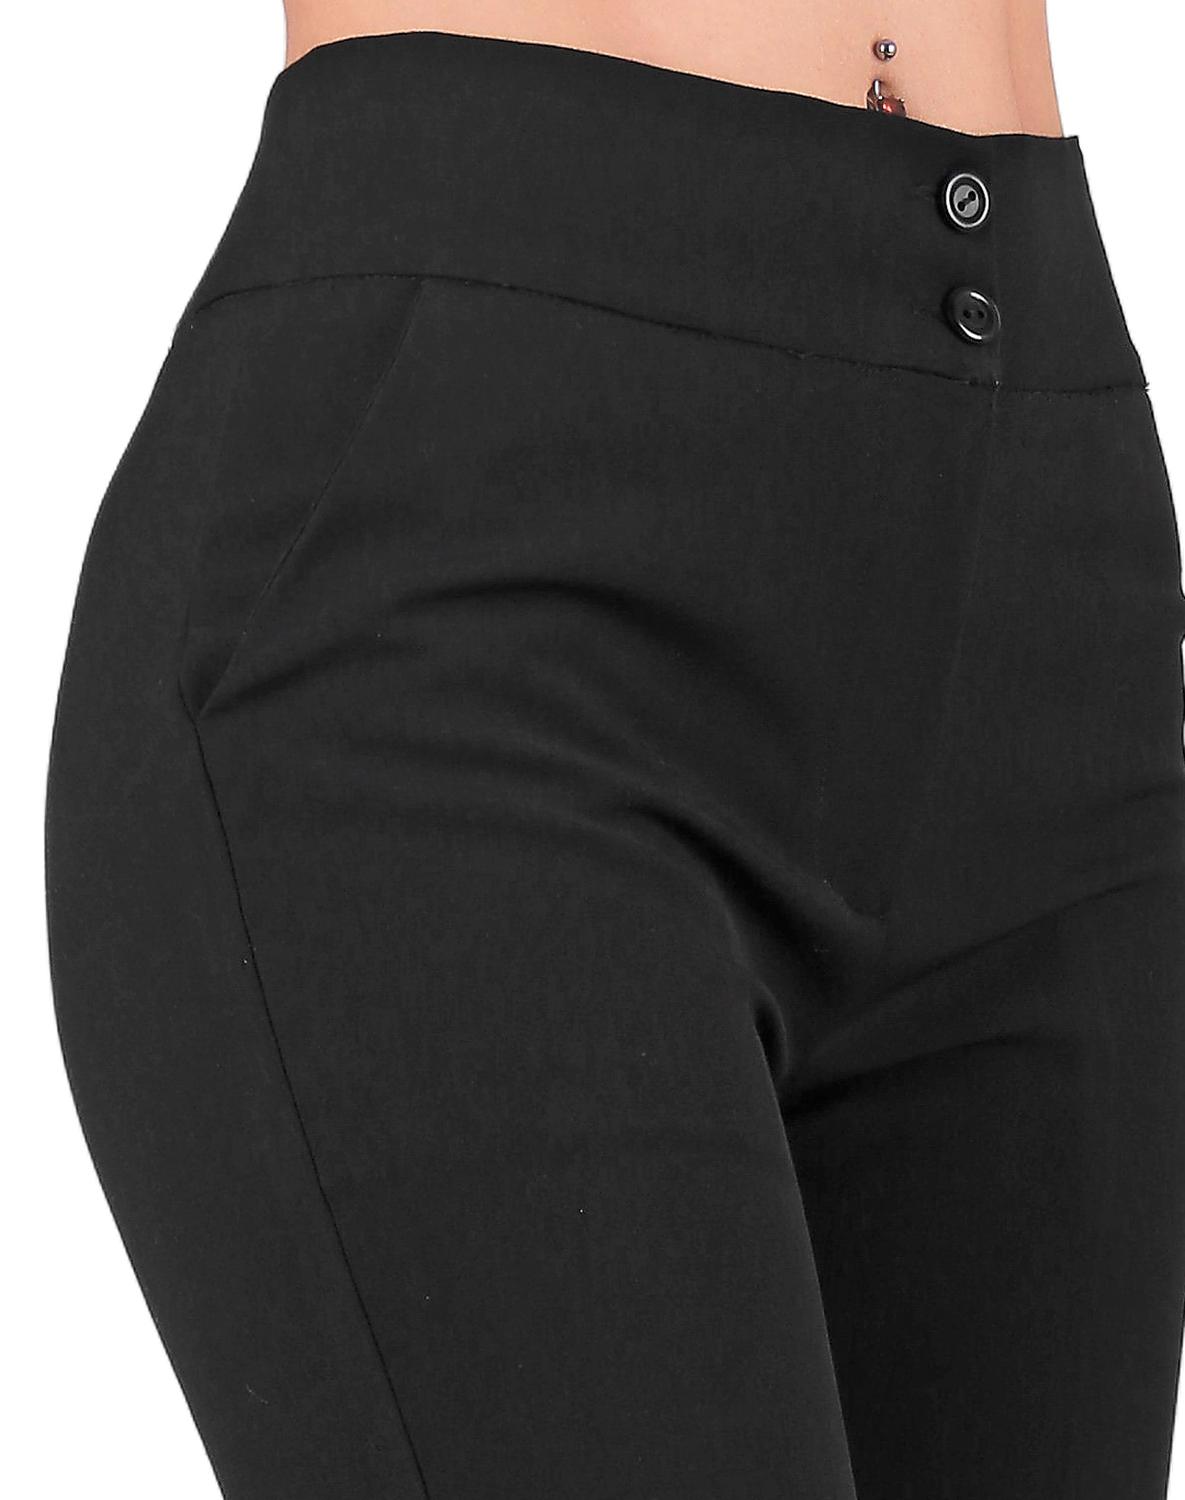 Pantalón Vestir Mujer Stfashion Negro 79304059 Spandex